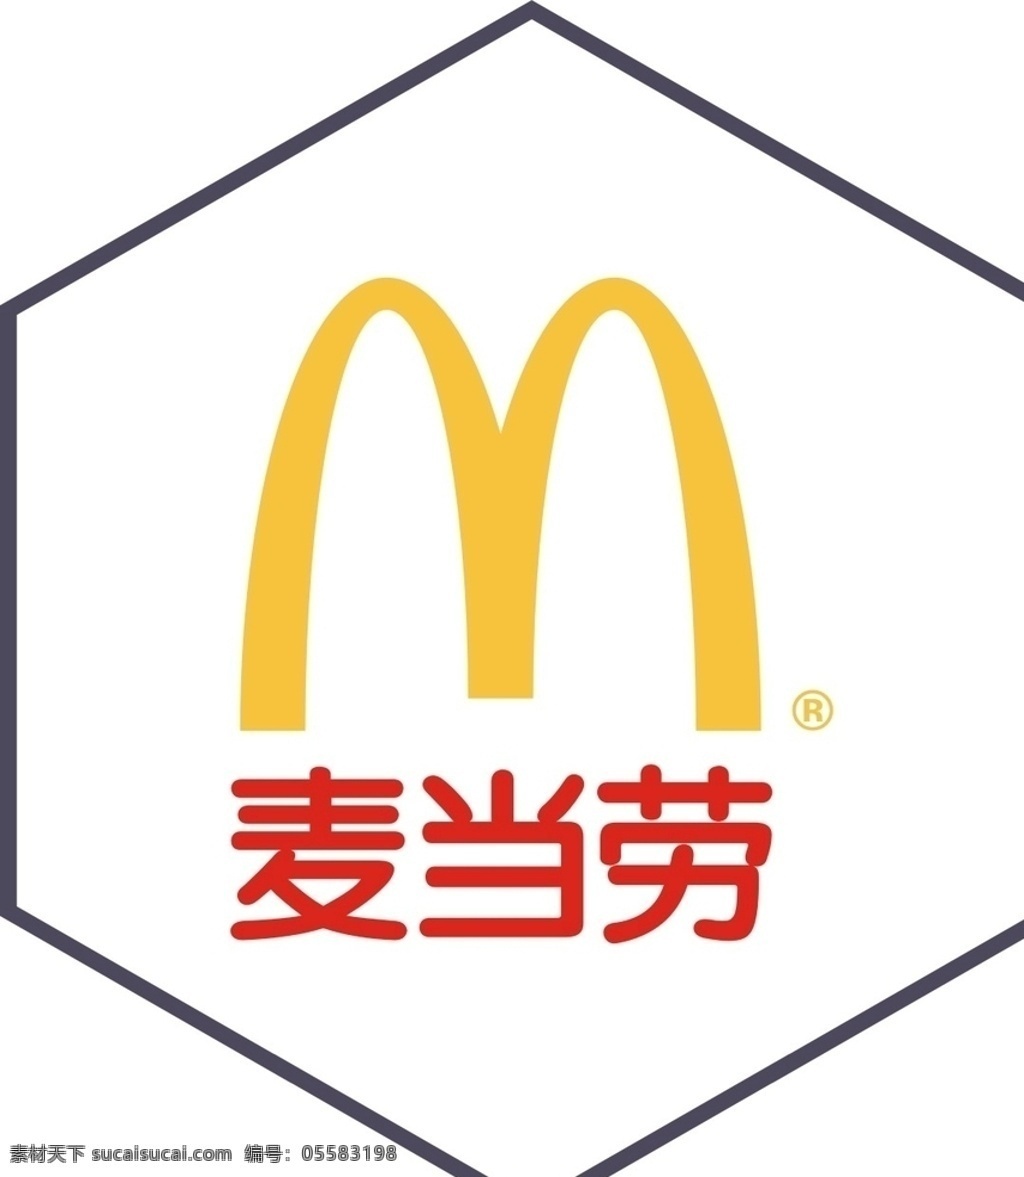 麦当劳 logo 品牌logo 良品铺子 必胜客 红孩子 新视野眼镜 金泊利钻石